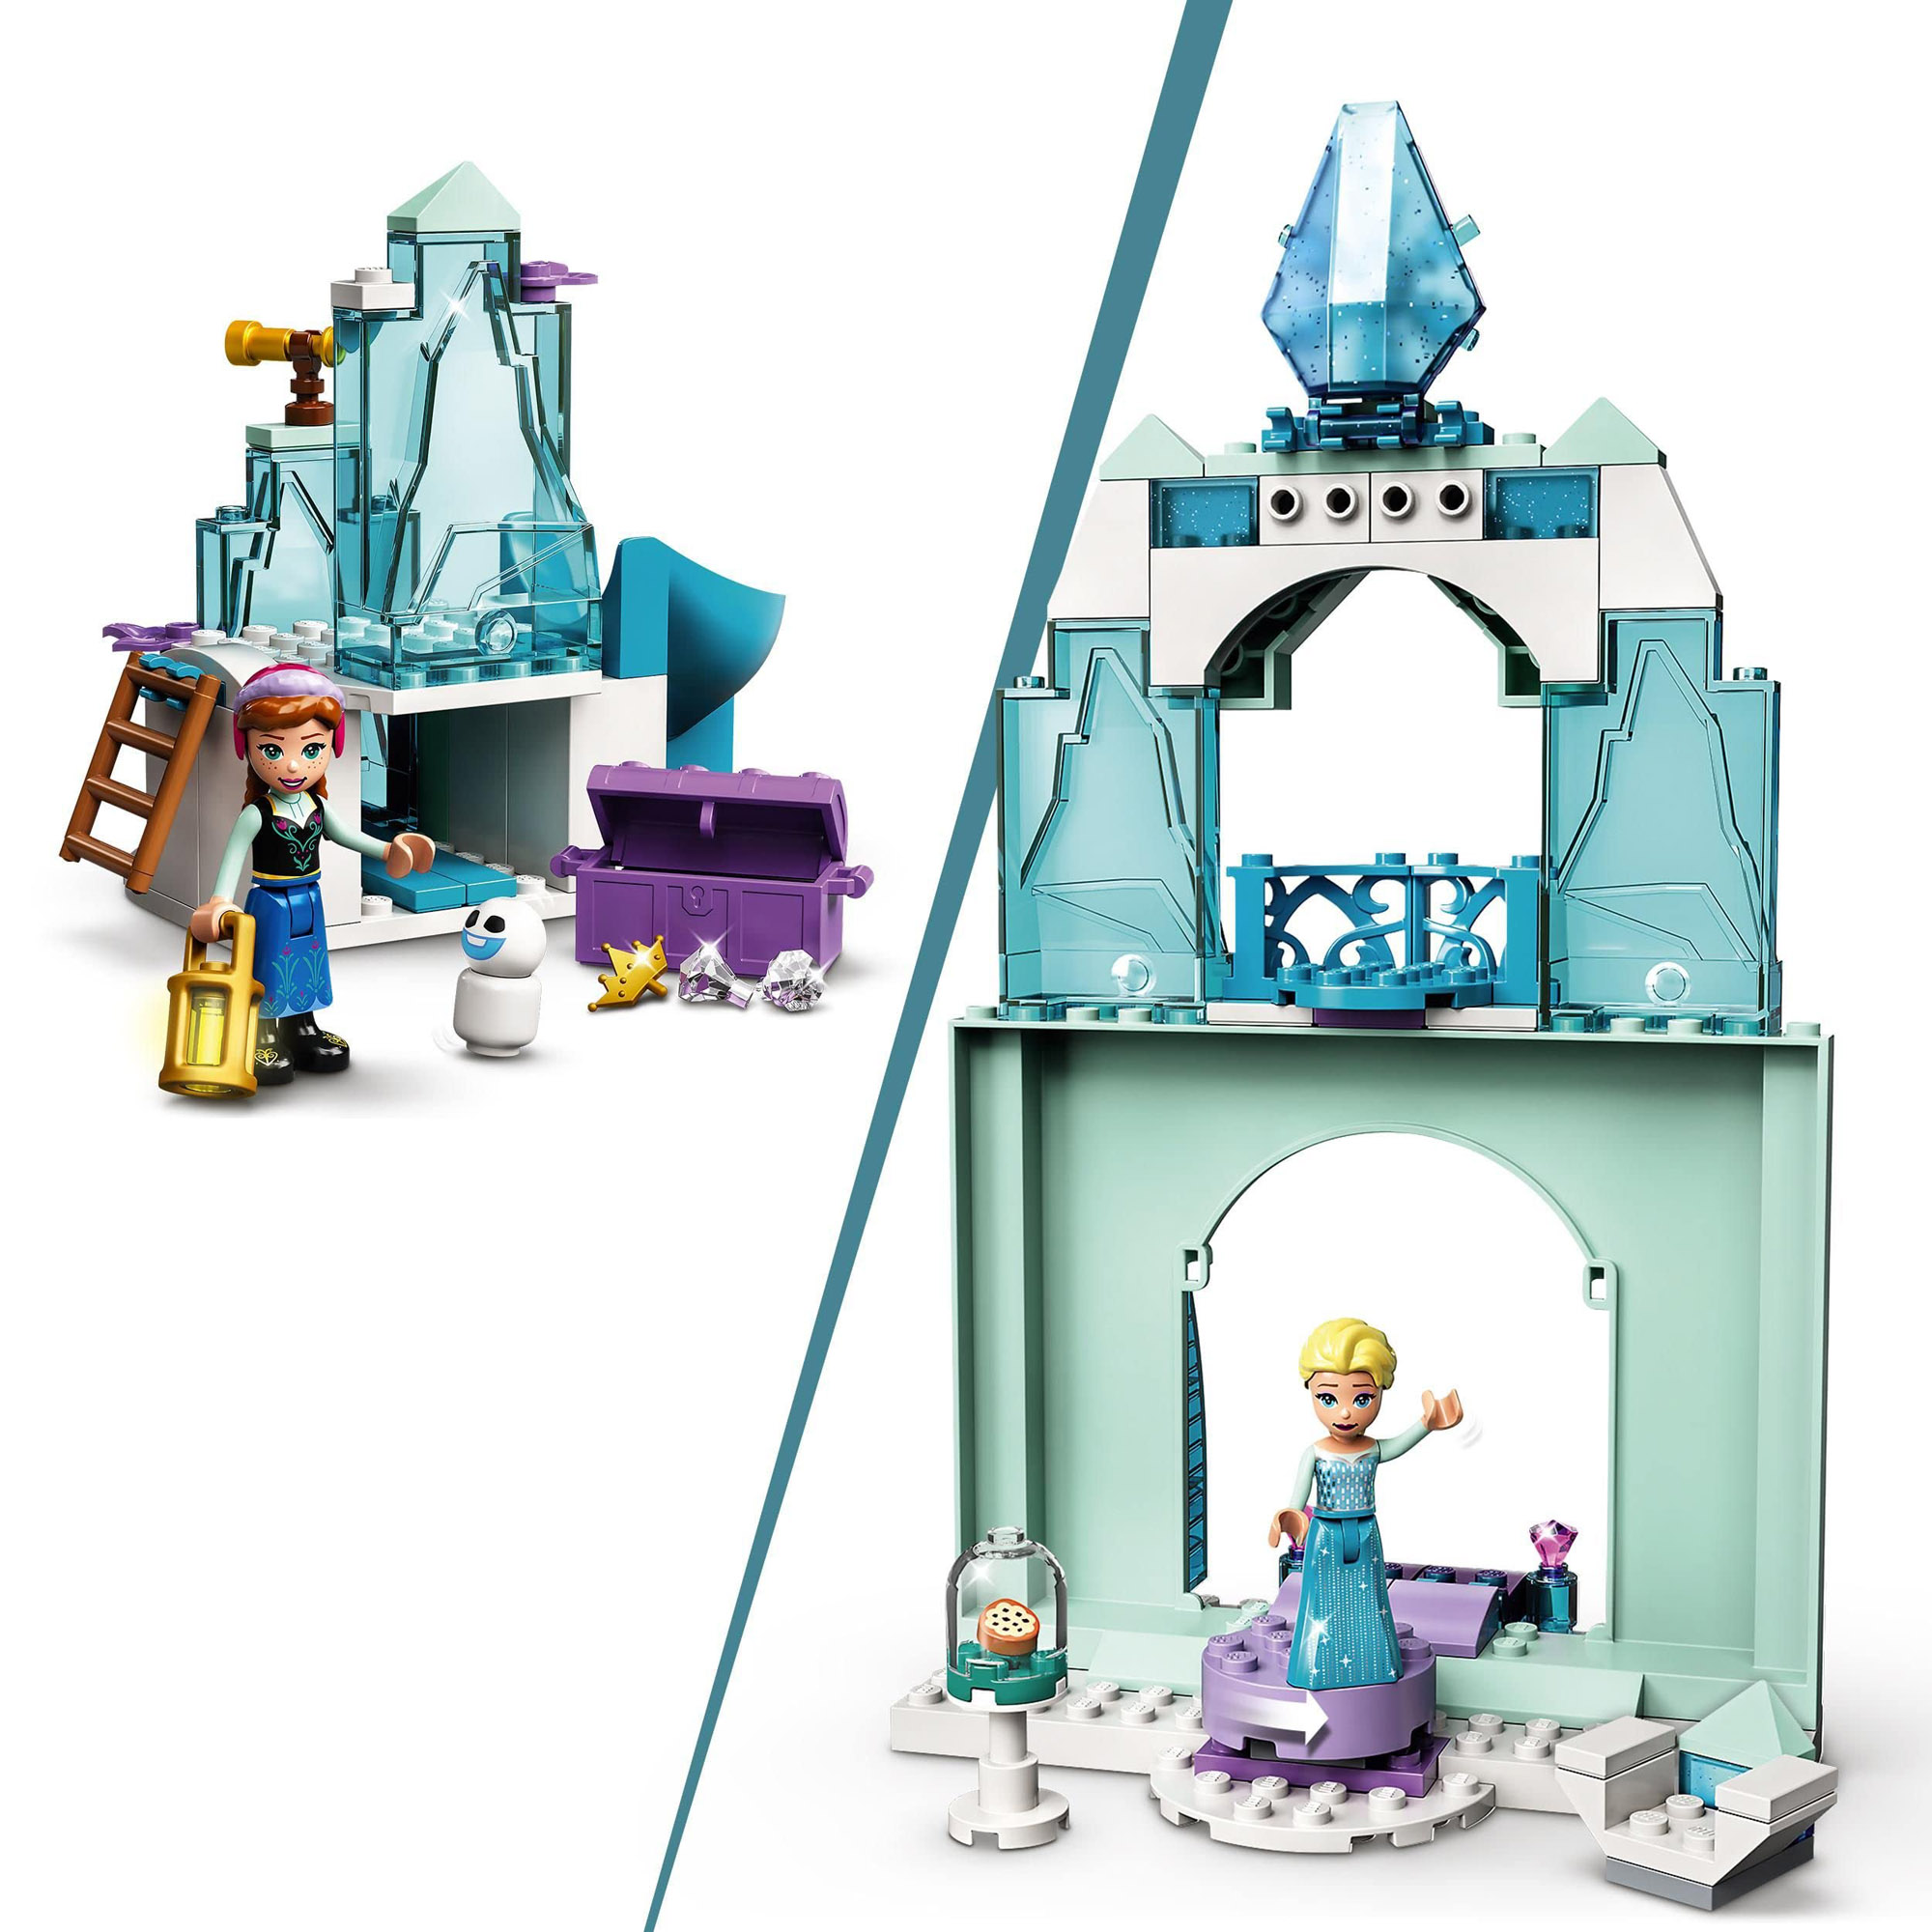 LEGO Disney Princess Il paese delle Meraviglie Ghiacciato di Anna ed Elsa con 6 Mini Bamboline, 43194 - Disney, LEGO